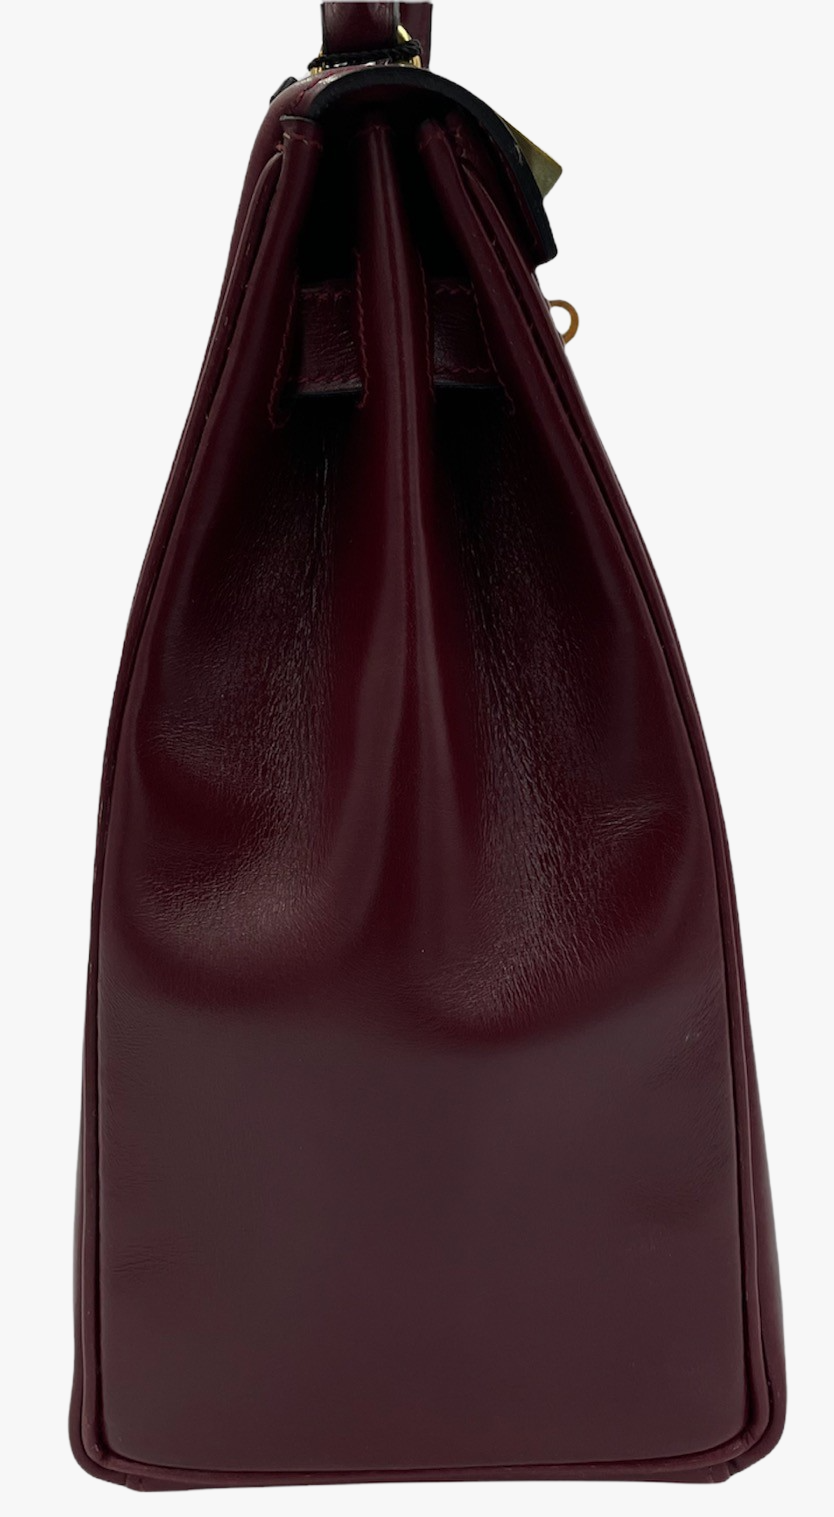 Vintage Hermes Kelly Bag In Burgundy Box Leather, 1976-3